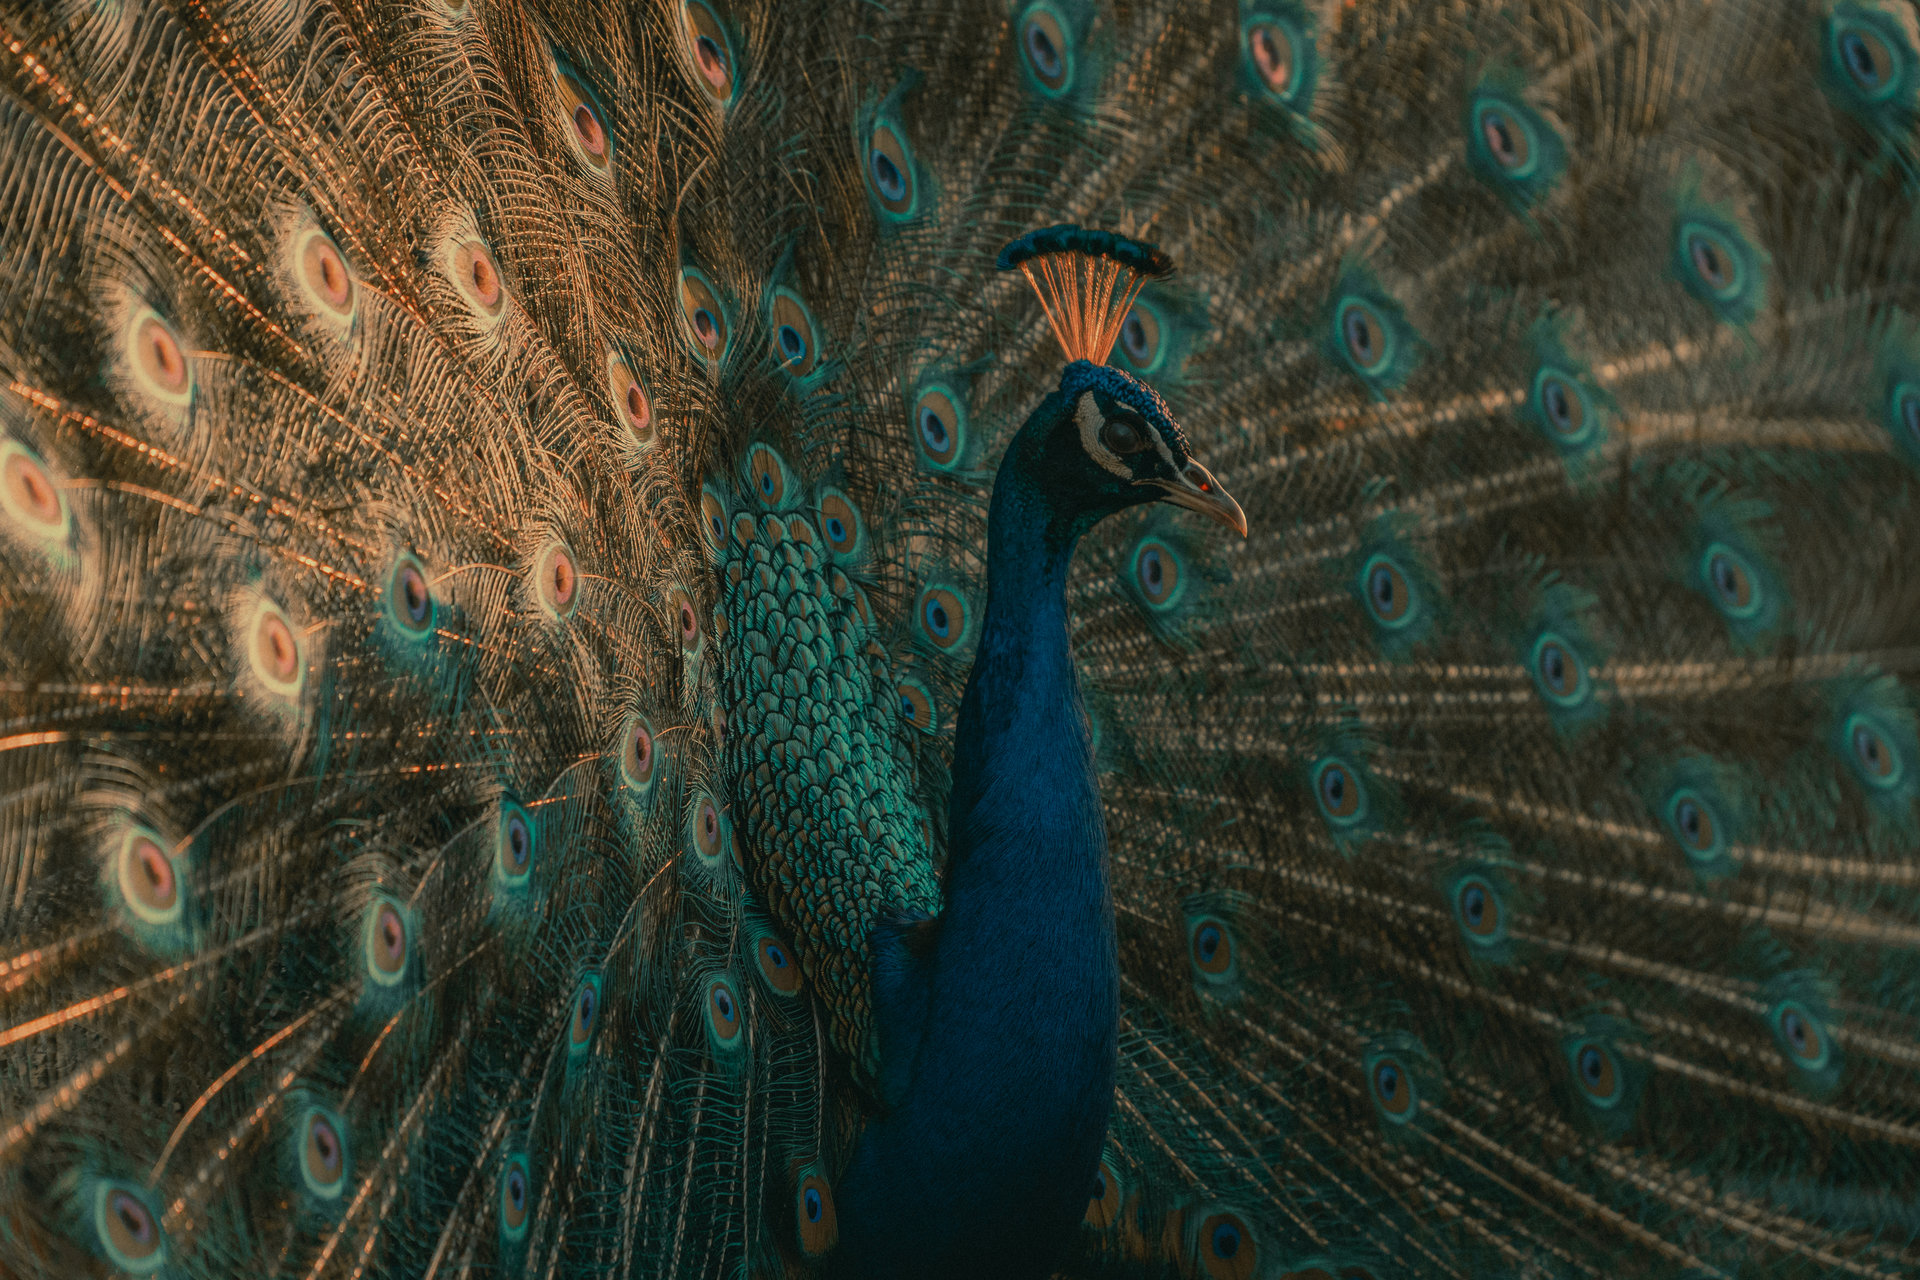 Прегръдката на пауна // Embrace of the Peacock от Angel Potchekansky - Potchekansky